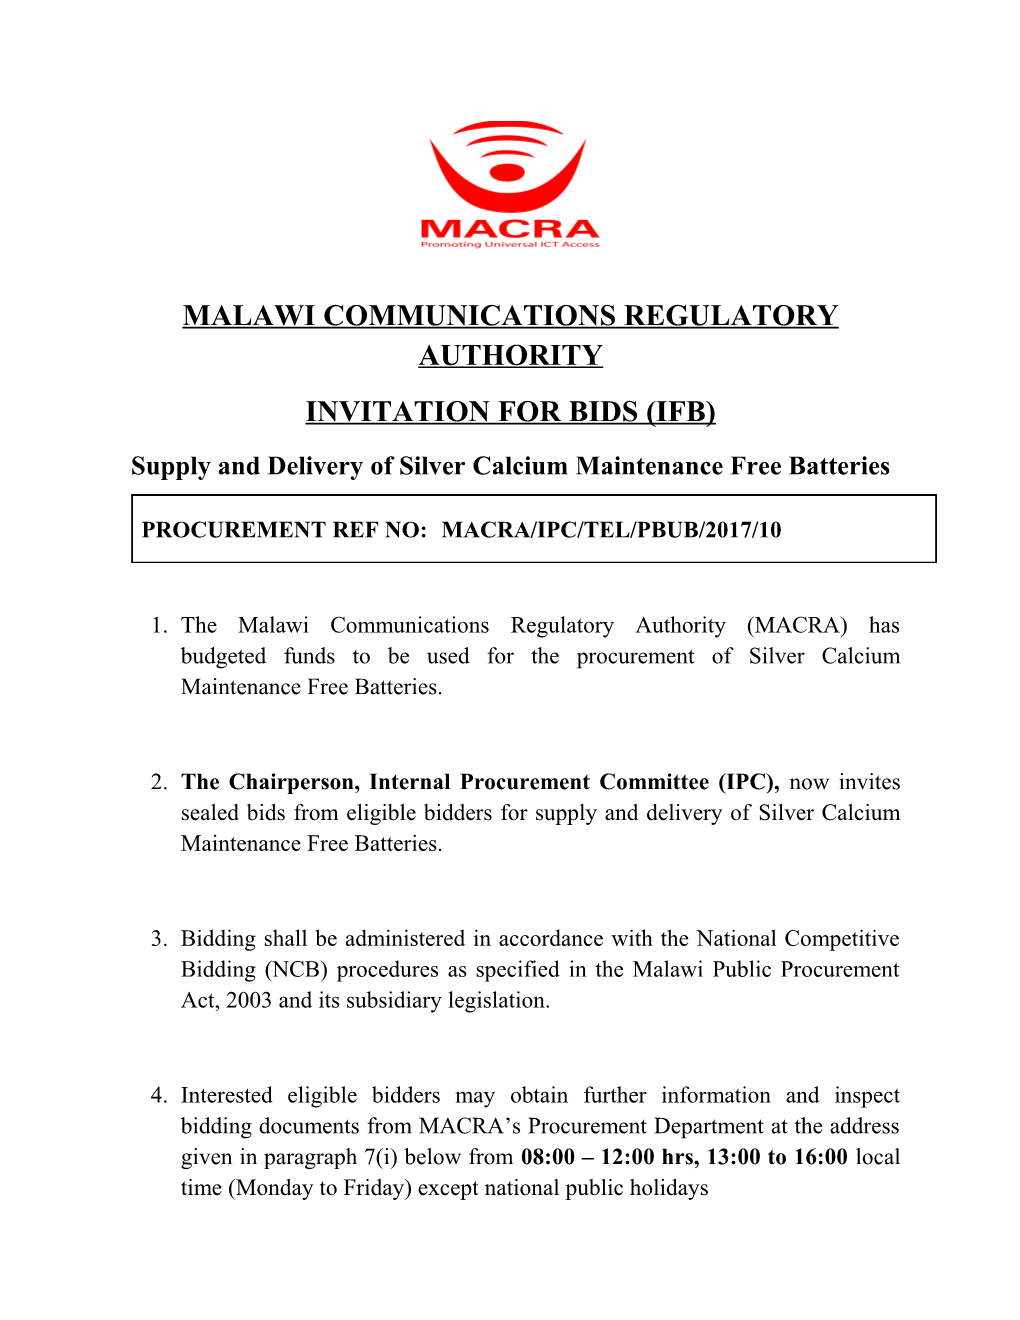 Malawi Communications Regulatory Authority s1